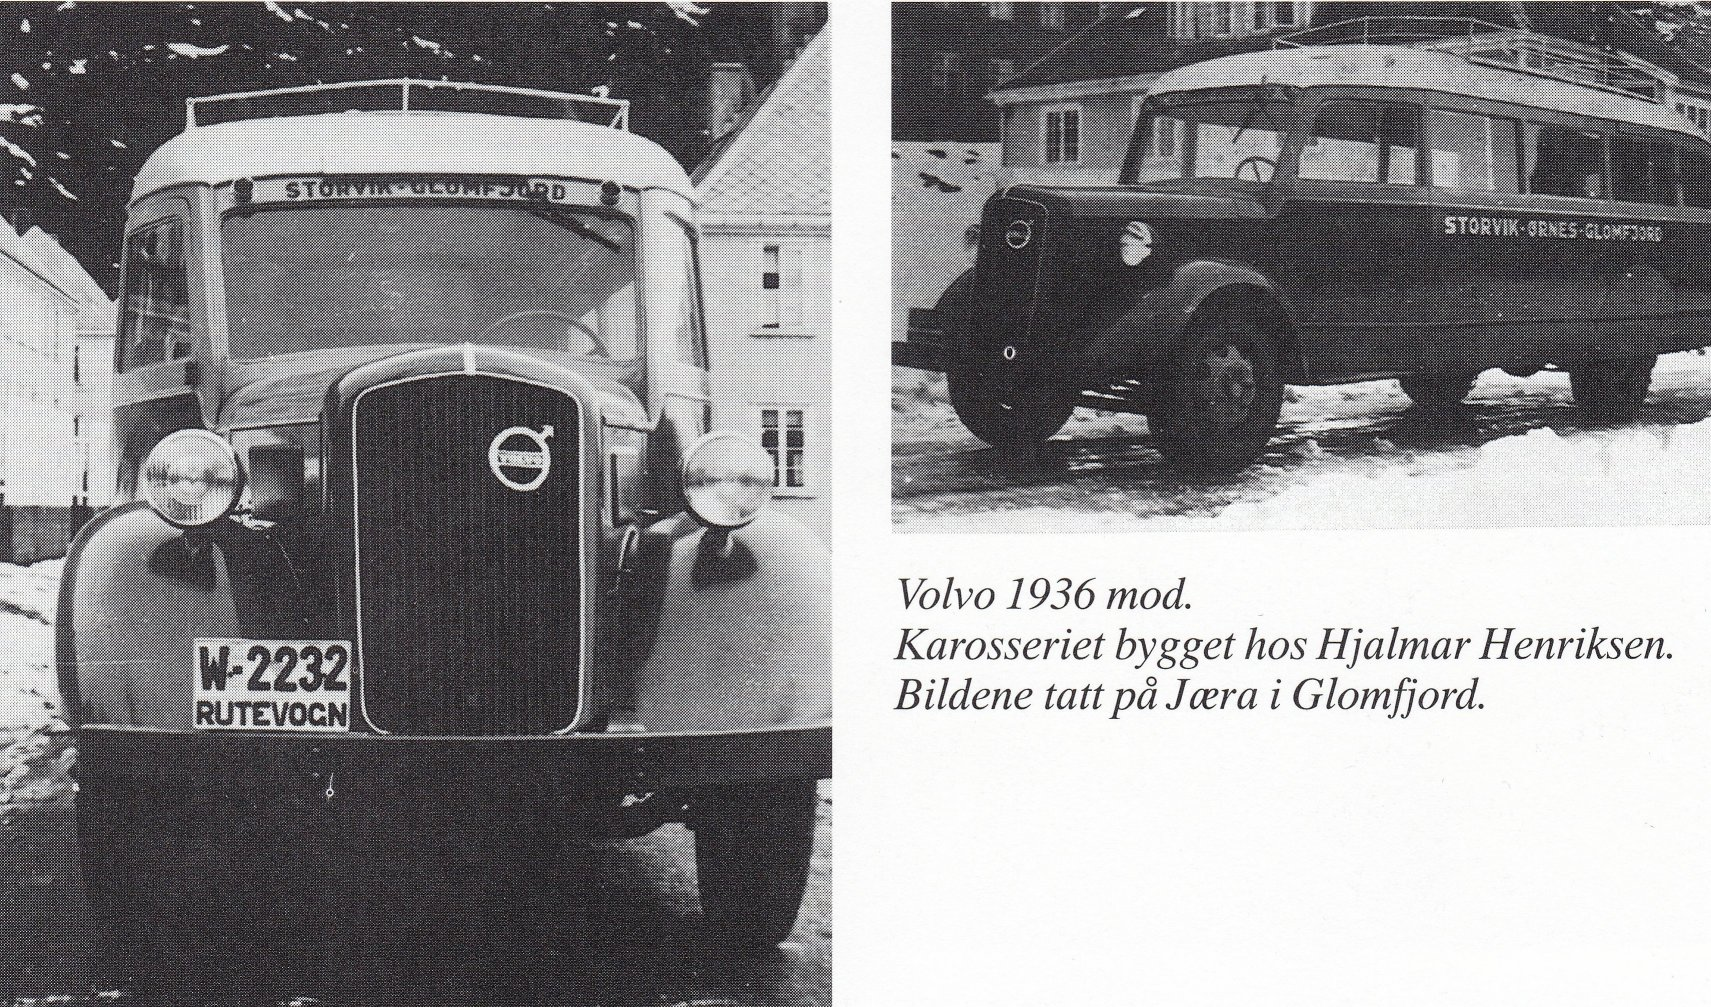 Etter hvert som tiden gikk, ble det behov for Boldevin-brødrene å investere i nytt materiell. Først en Reo, og så kom den første ordentlige bussen, en brukt Dodge 1932-modell.